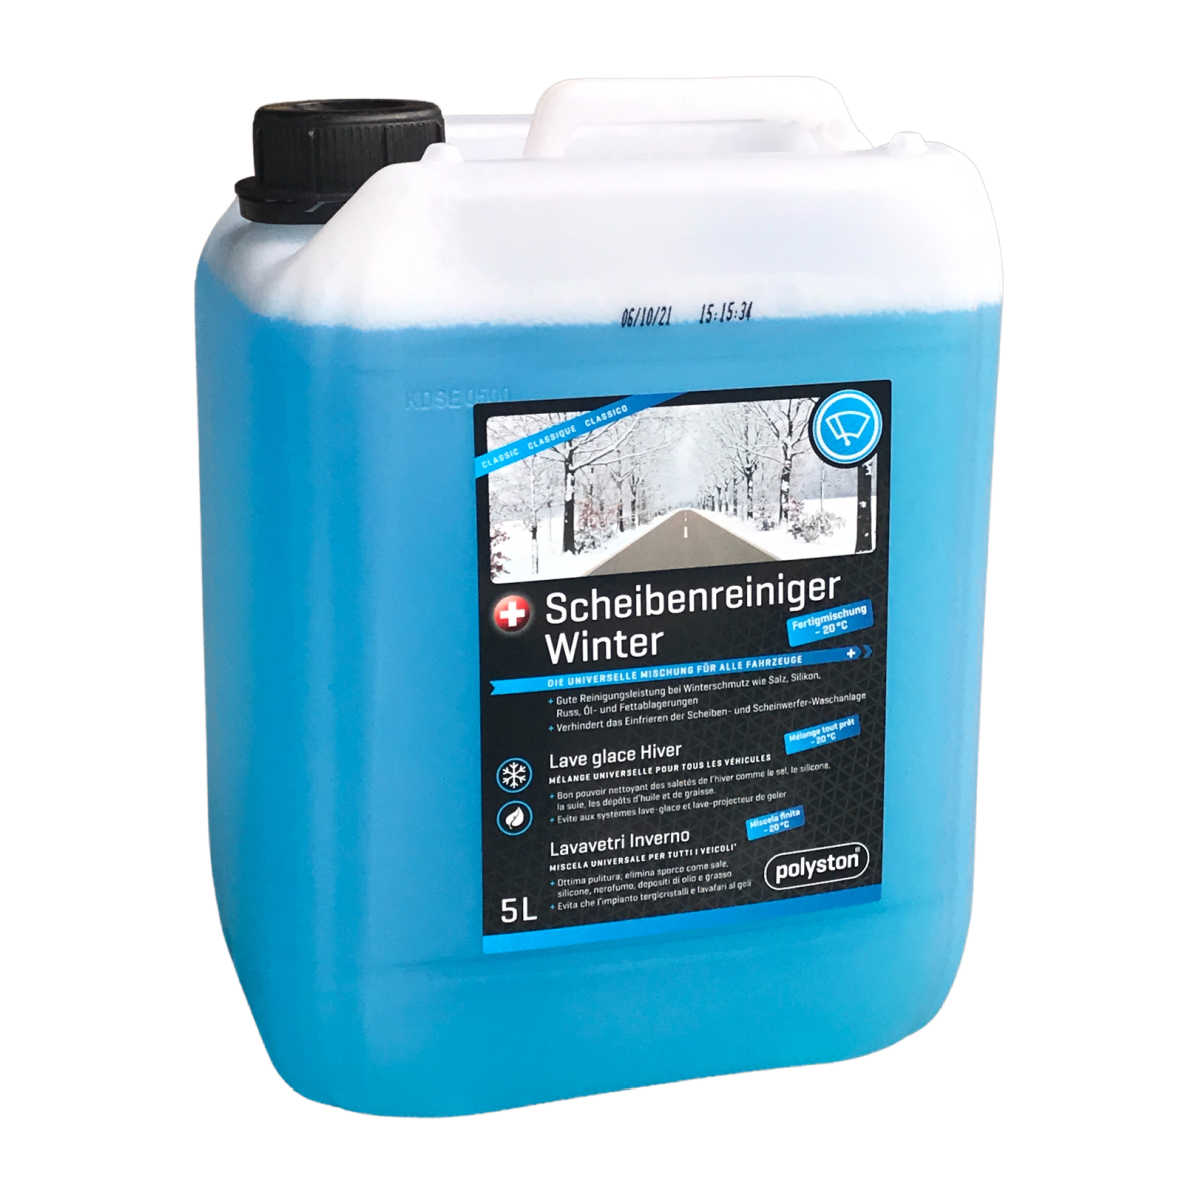 Scheibenreiniger-Frostschutz WINTER 1 Liter - Ihr Hersteller-Shop:  www.